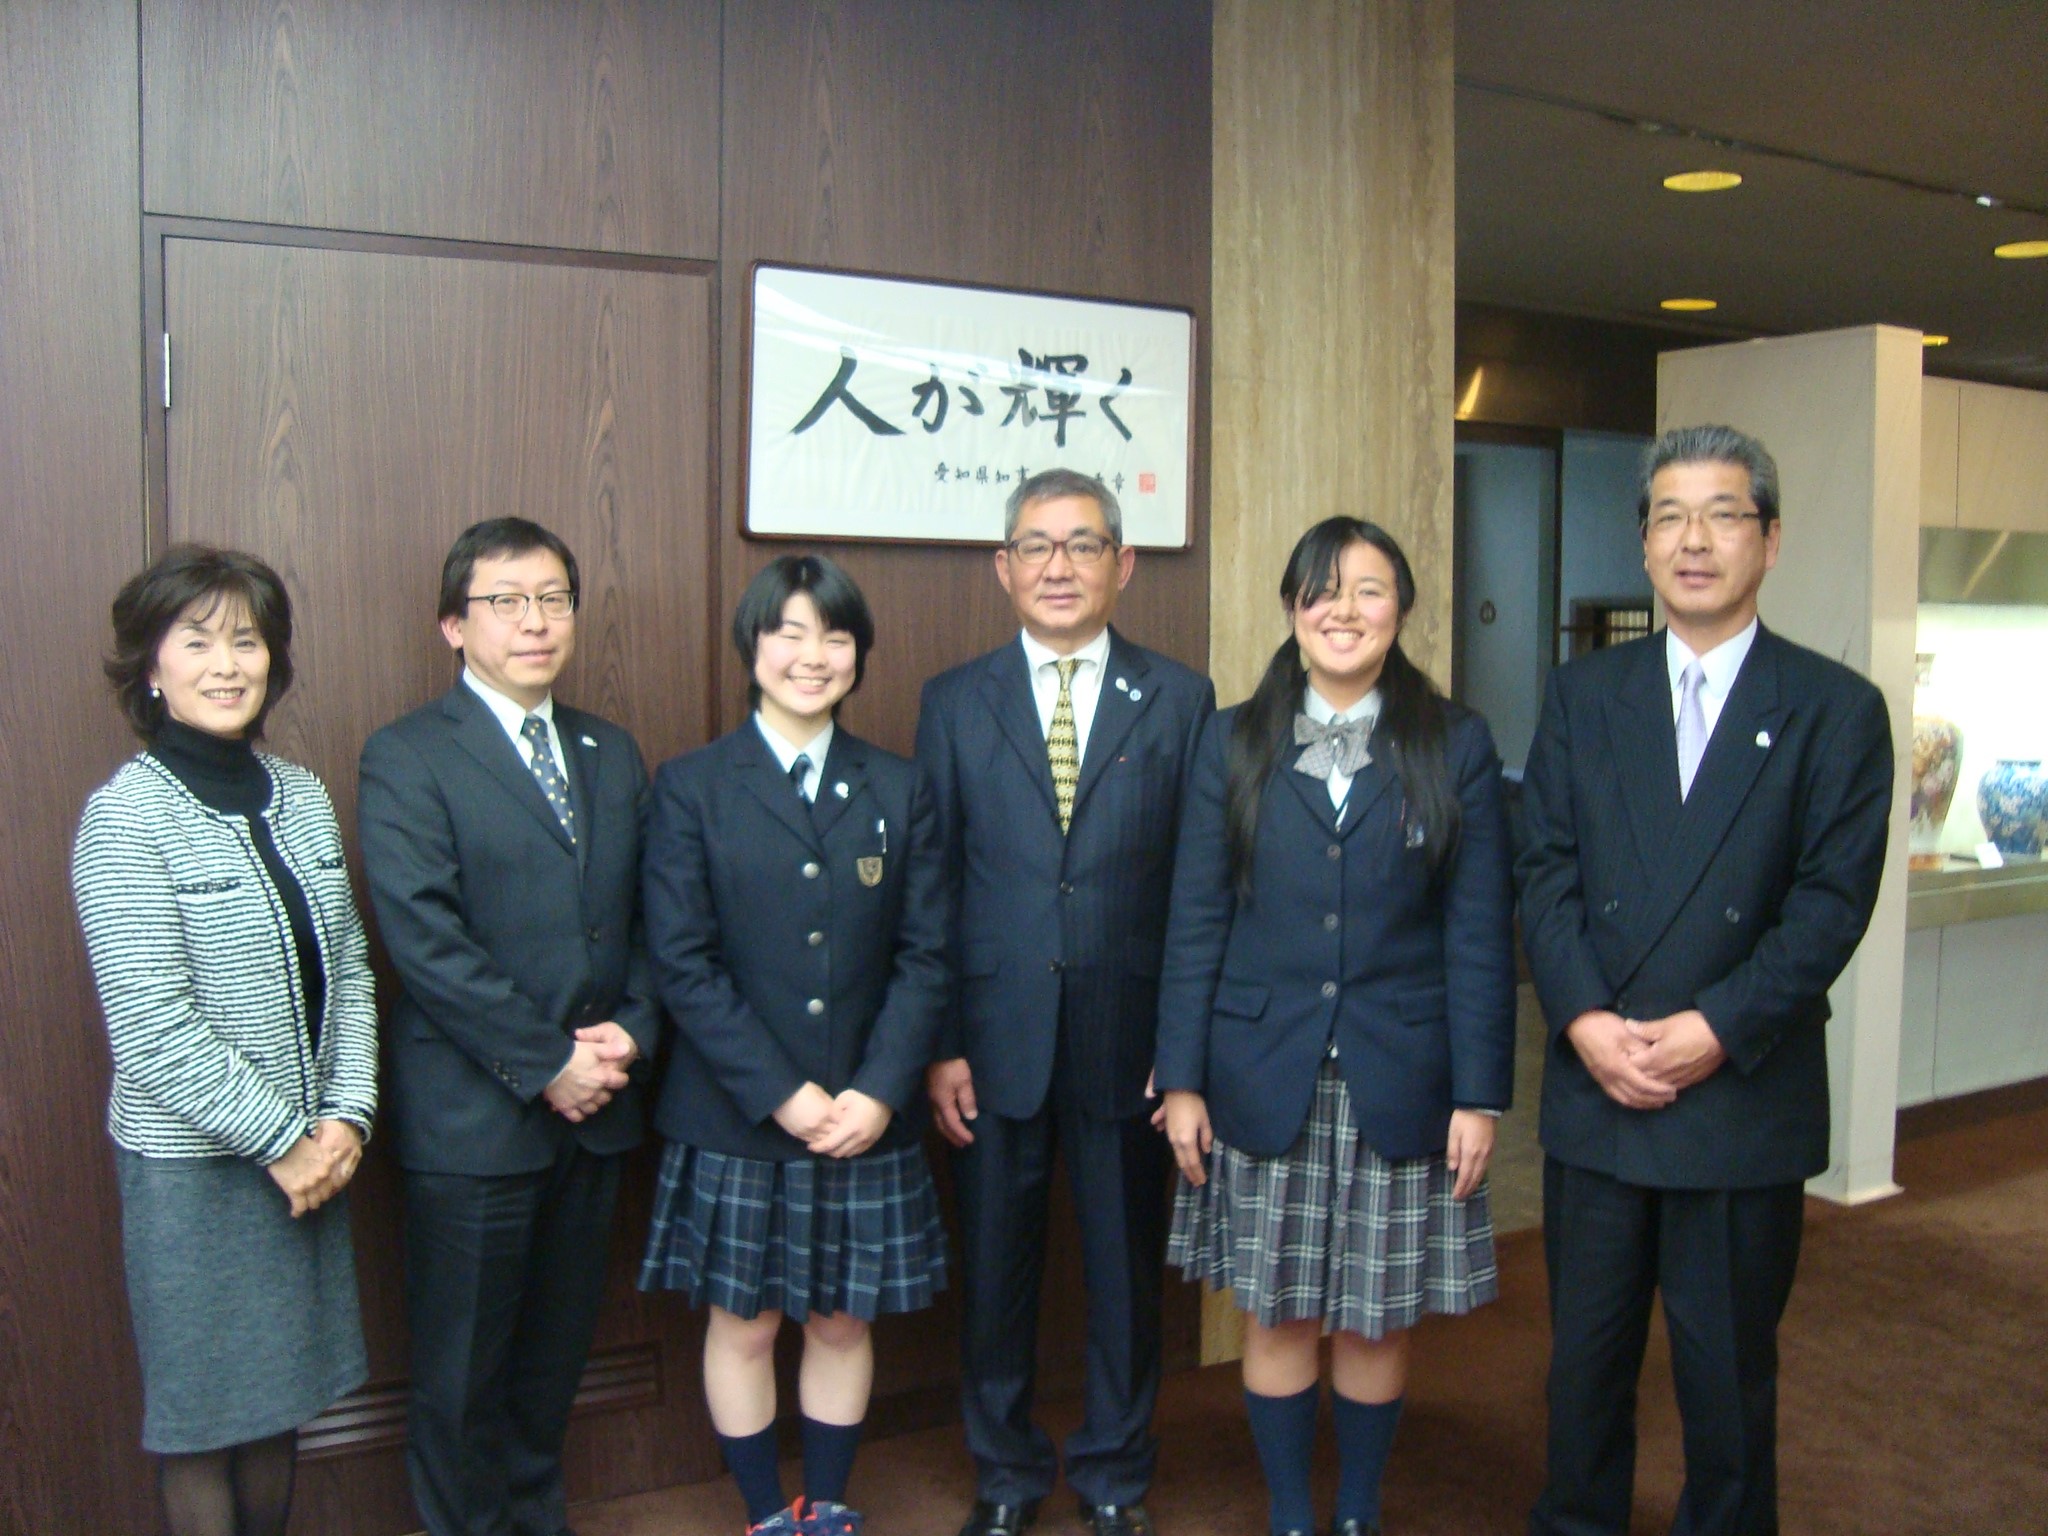 ３月５日 高校生が県知事を表敬訪問しました 名古屋ユネスコ協会 活動報告ブログ